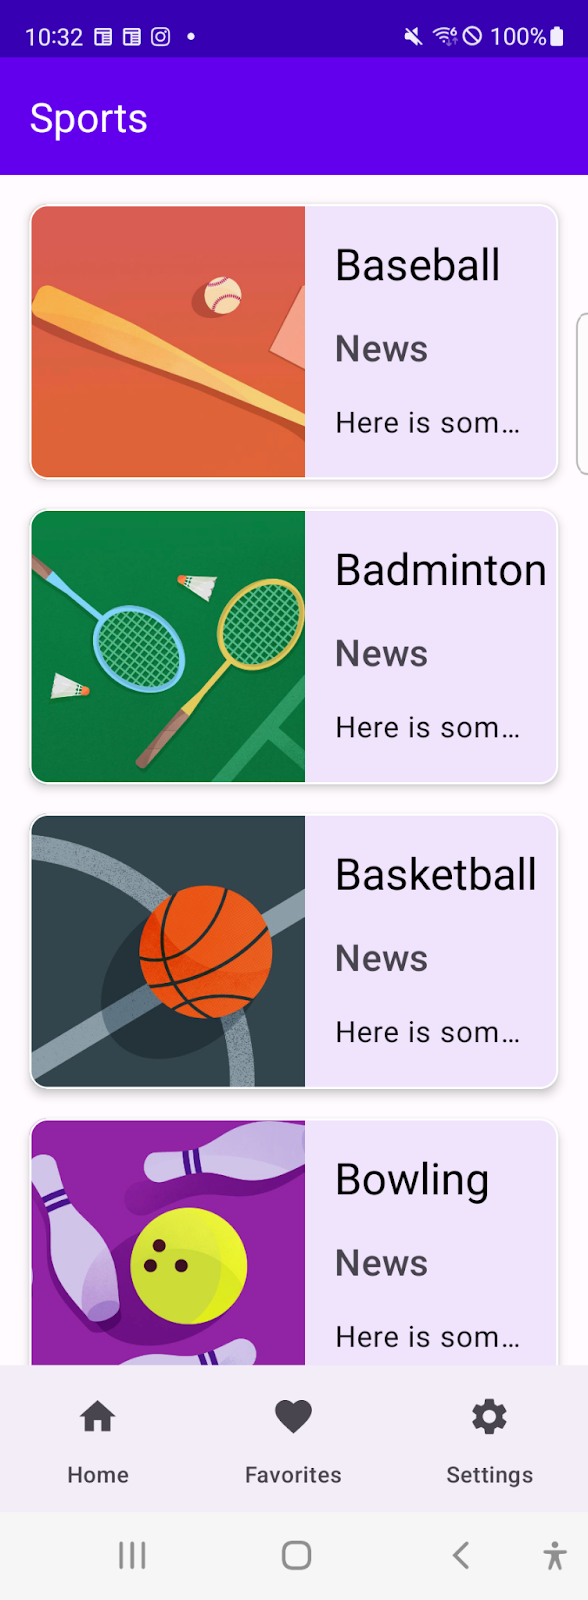 O app esportivo mostra uma lista de esportes em uma janela compacta com uma barra de navegação como componente da parte de cima da tela.